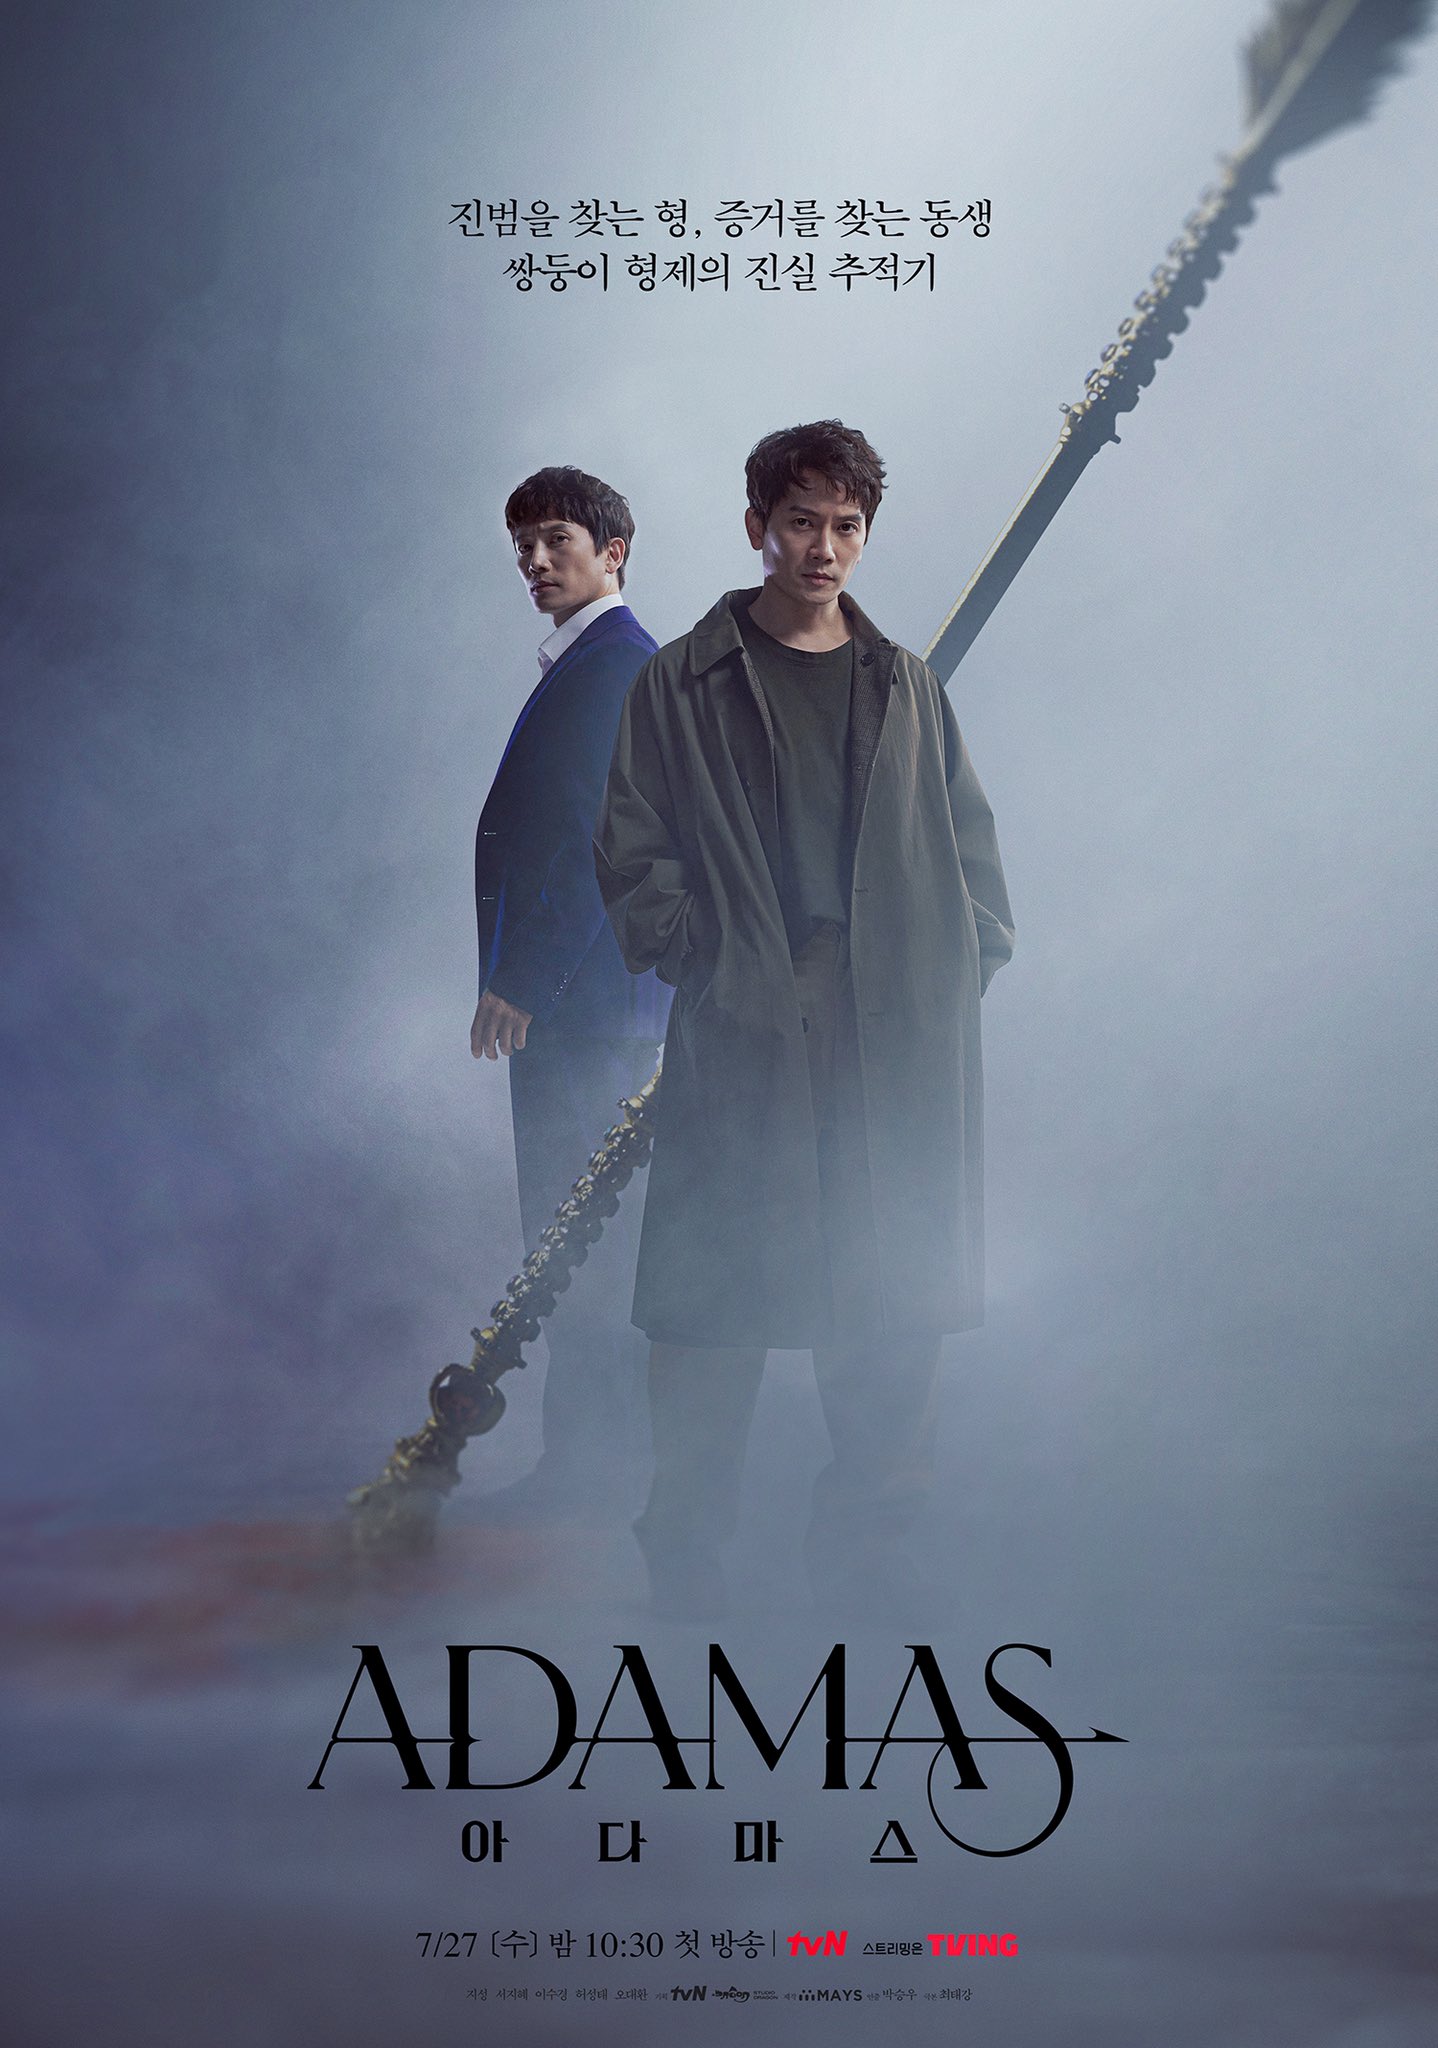 Adamas Season 1 Episode 2